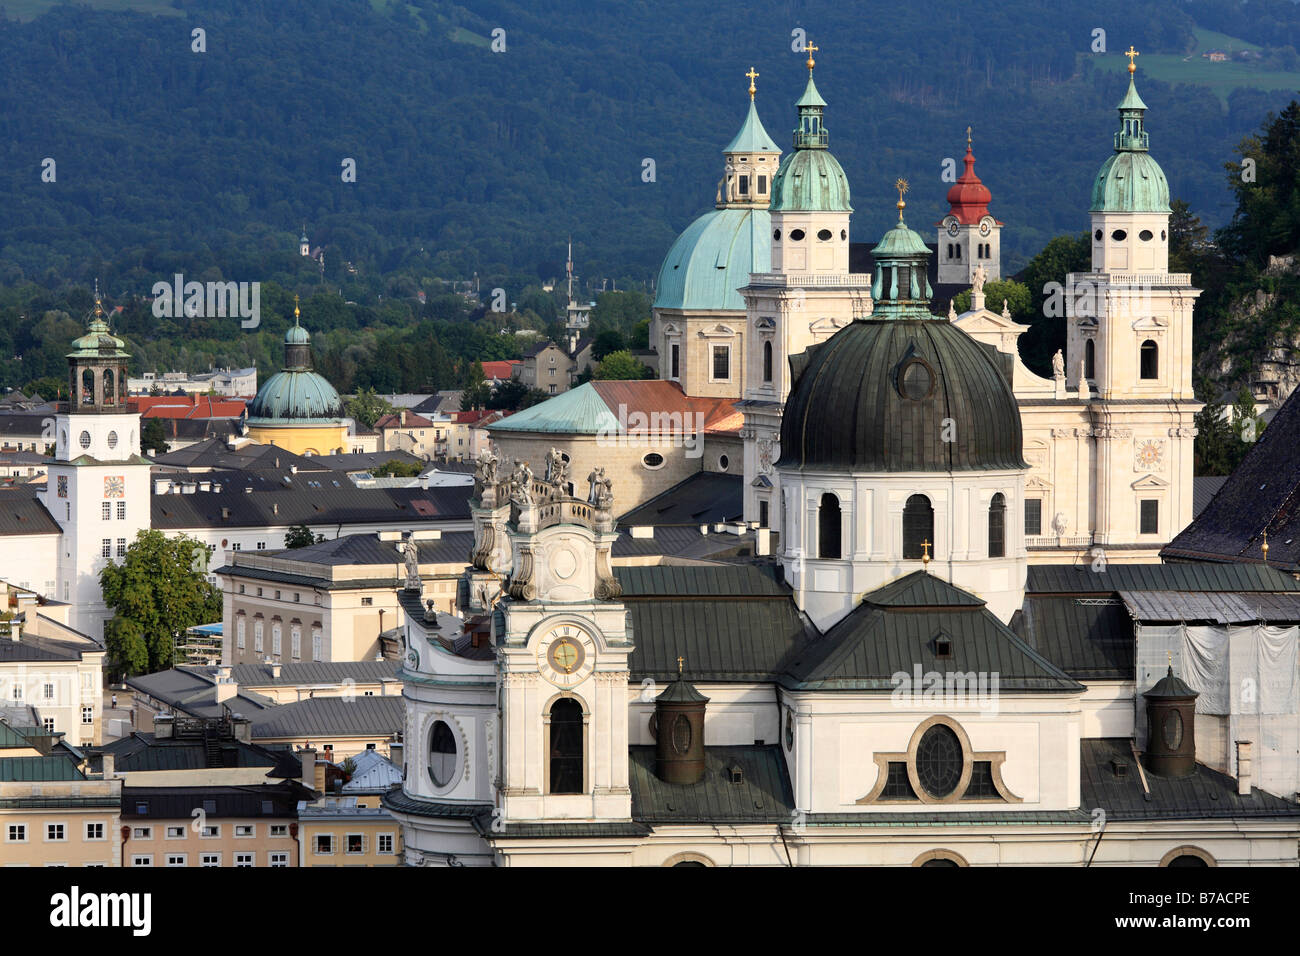 Kollegienkirche Chiesa cattedrale e il monastero di Nonnberg, Glockenspiel sinistra, Salisburgo, Austria, Europa Foto Stock